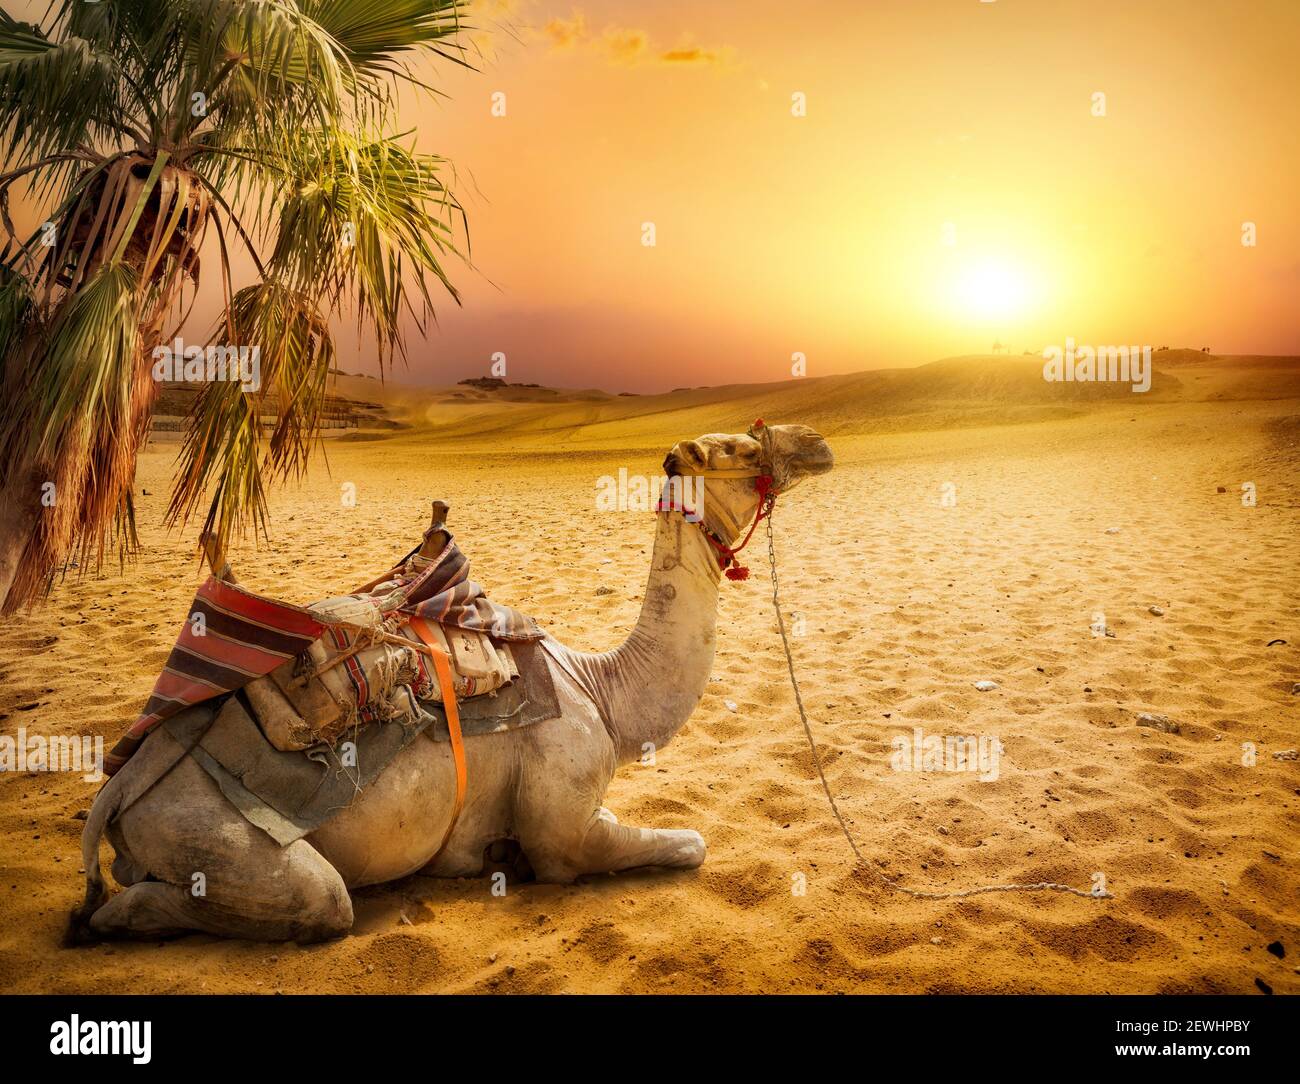 Camello descansando bajo una palmera en el desierto de Egipto. Foto de stock